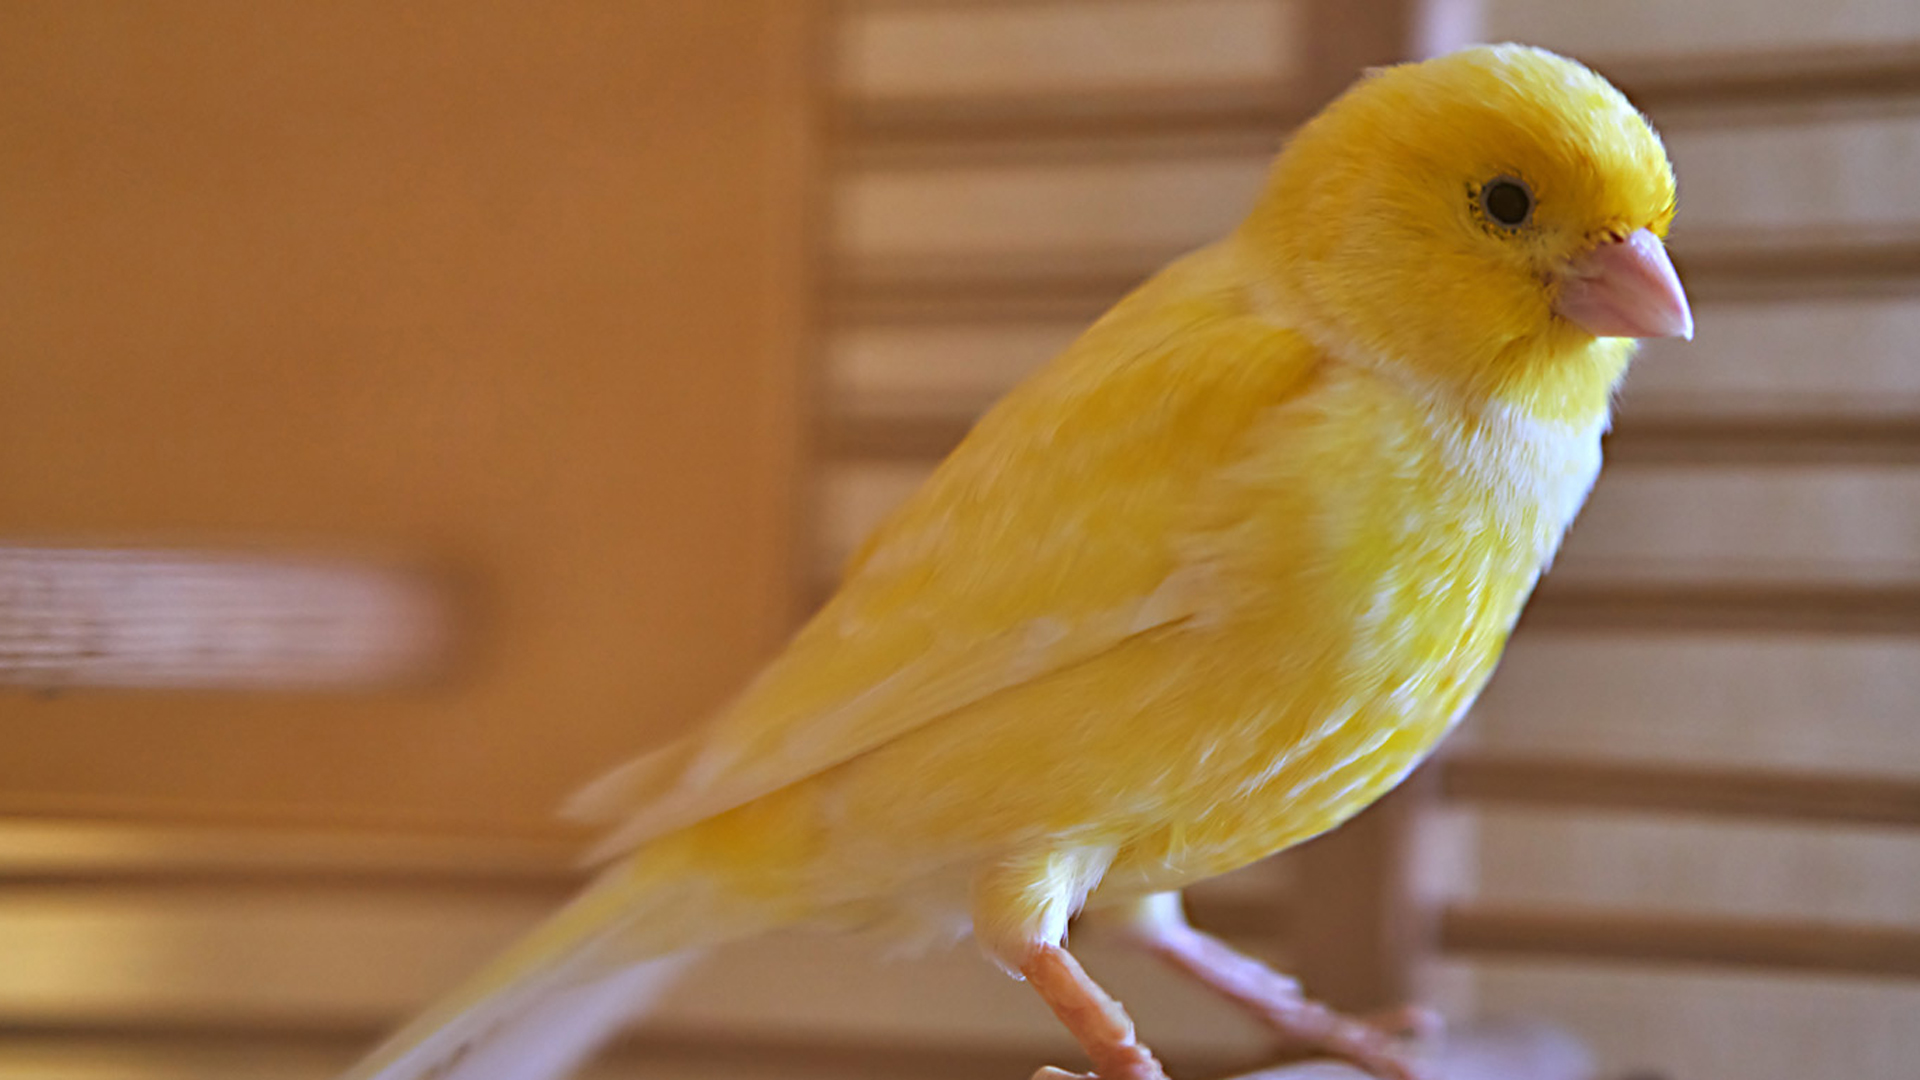 Yellow Bird Is Standing On Floor In Blur Wallpaper 2K Birds